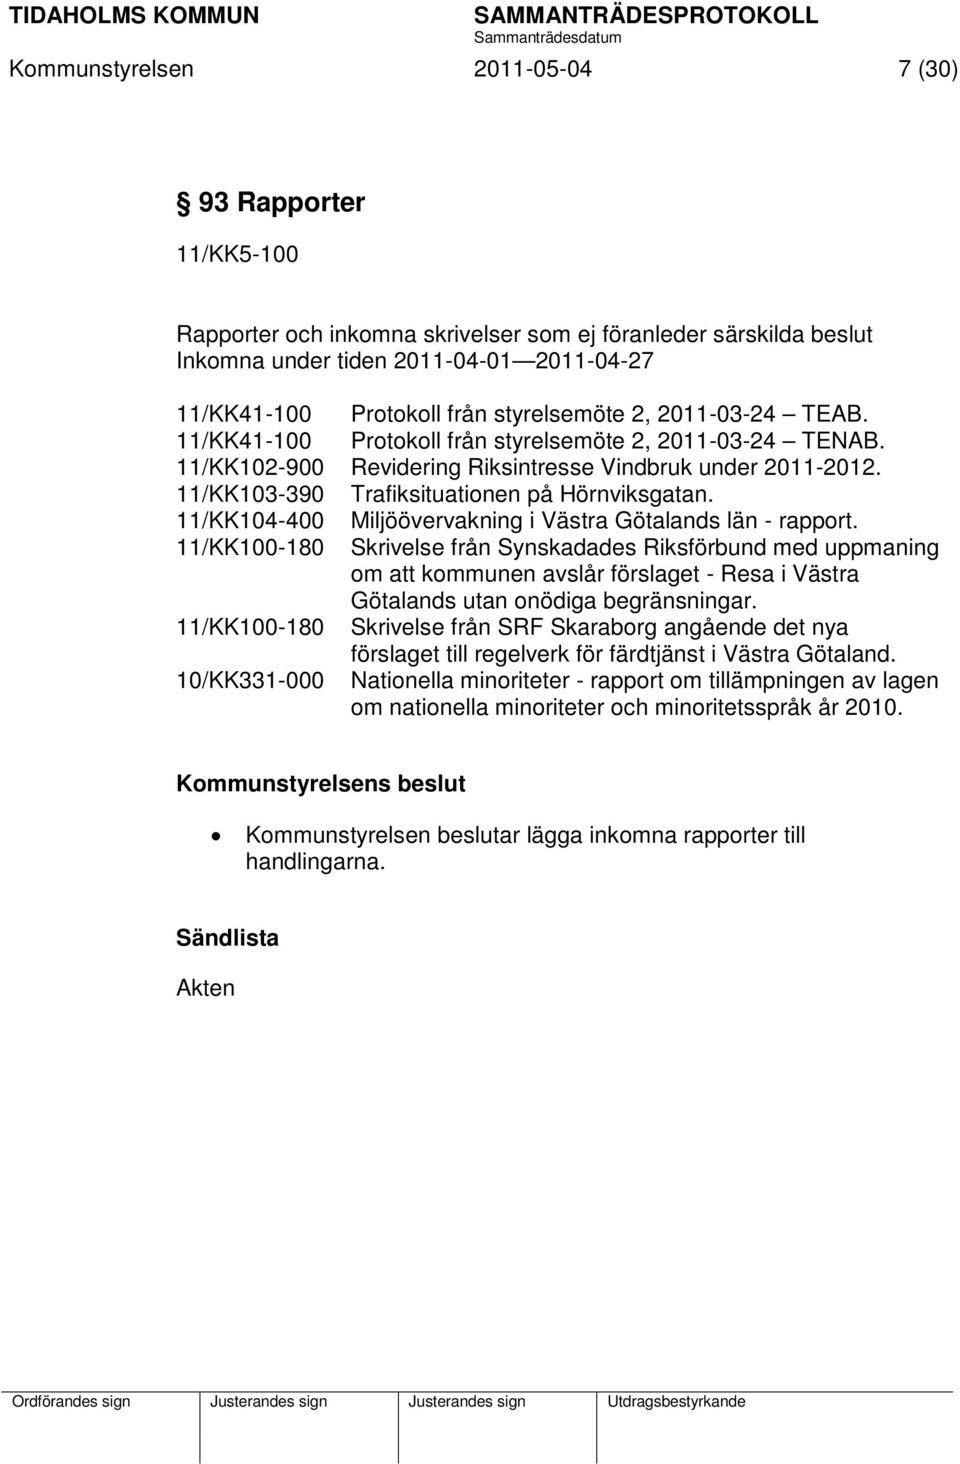 11/KK103-390 Trafiksituationen på Hörnviksgatan. 11/KK104-400 Miljöövervakning i Västra Götalands län - rapport.